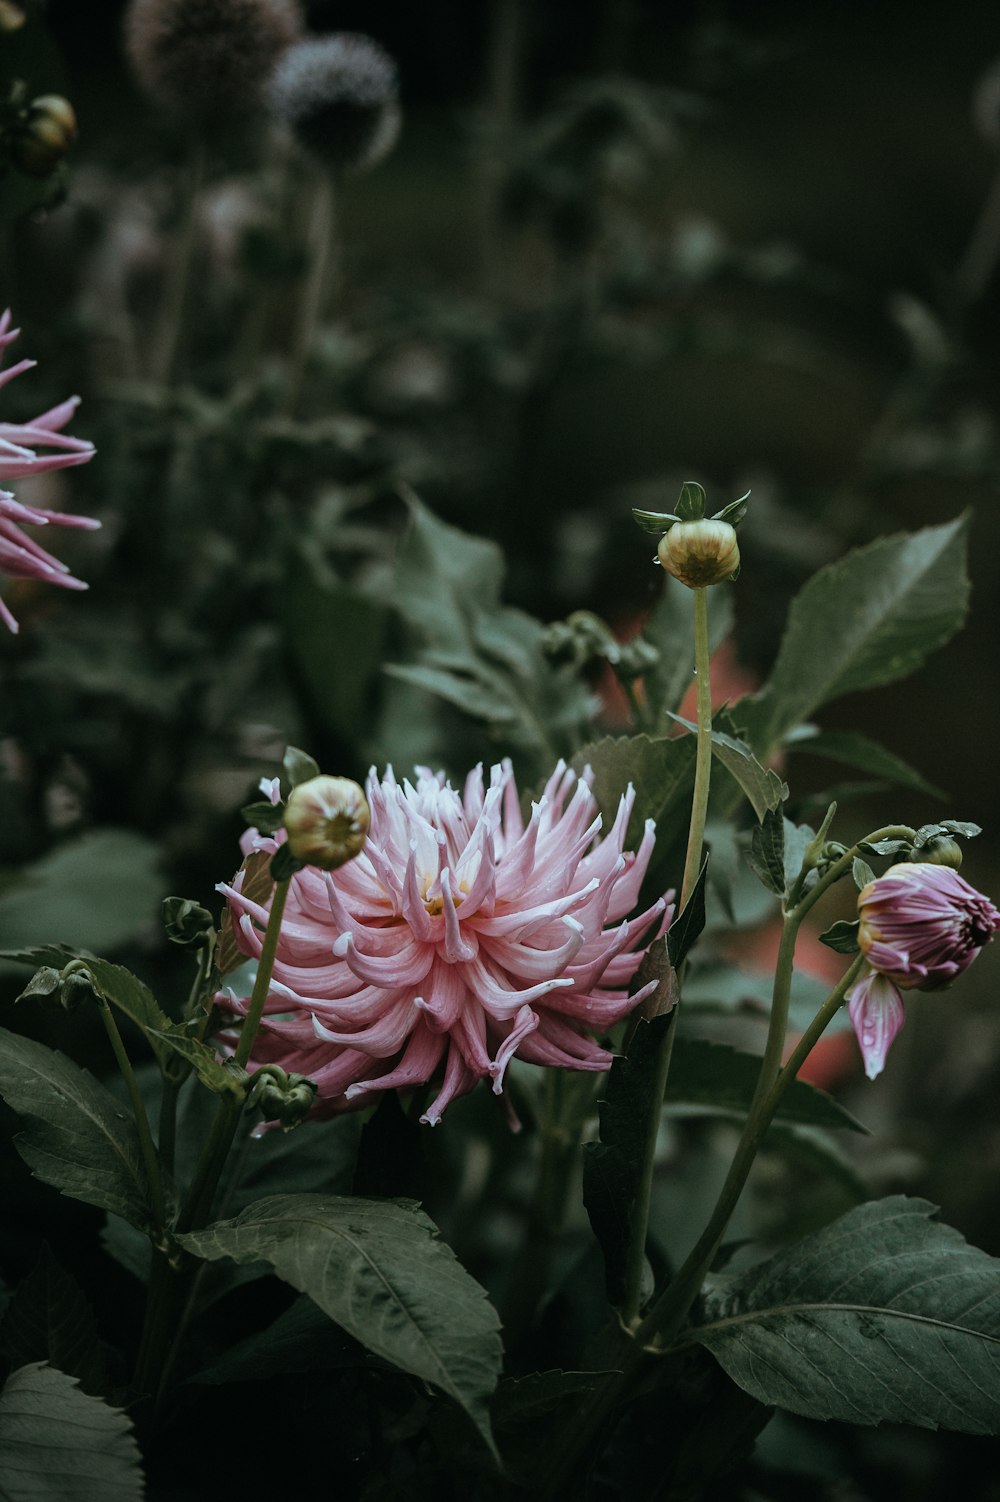 fiore dai petali rosa nella fotografia ravvicinata